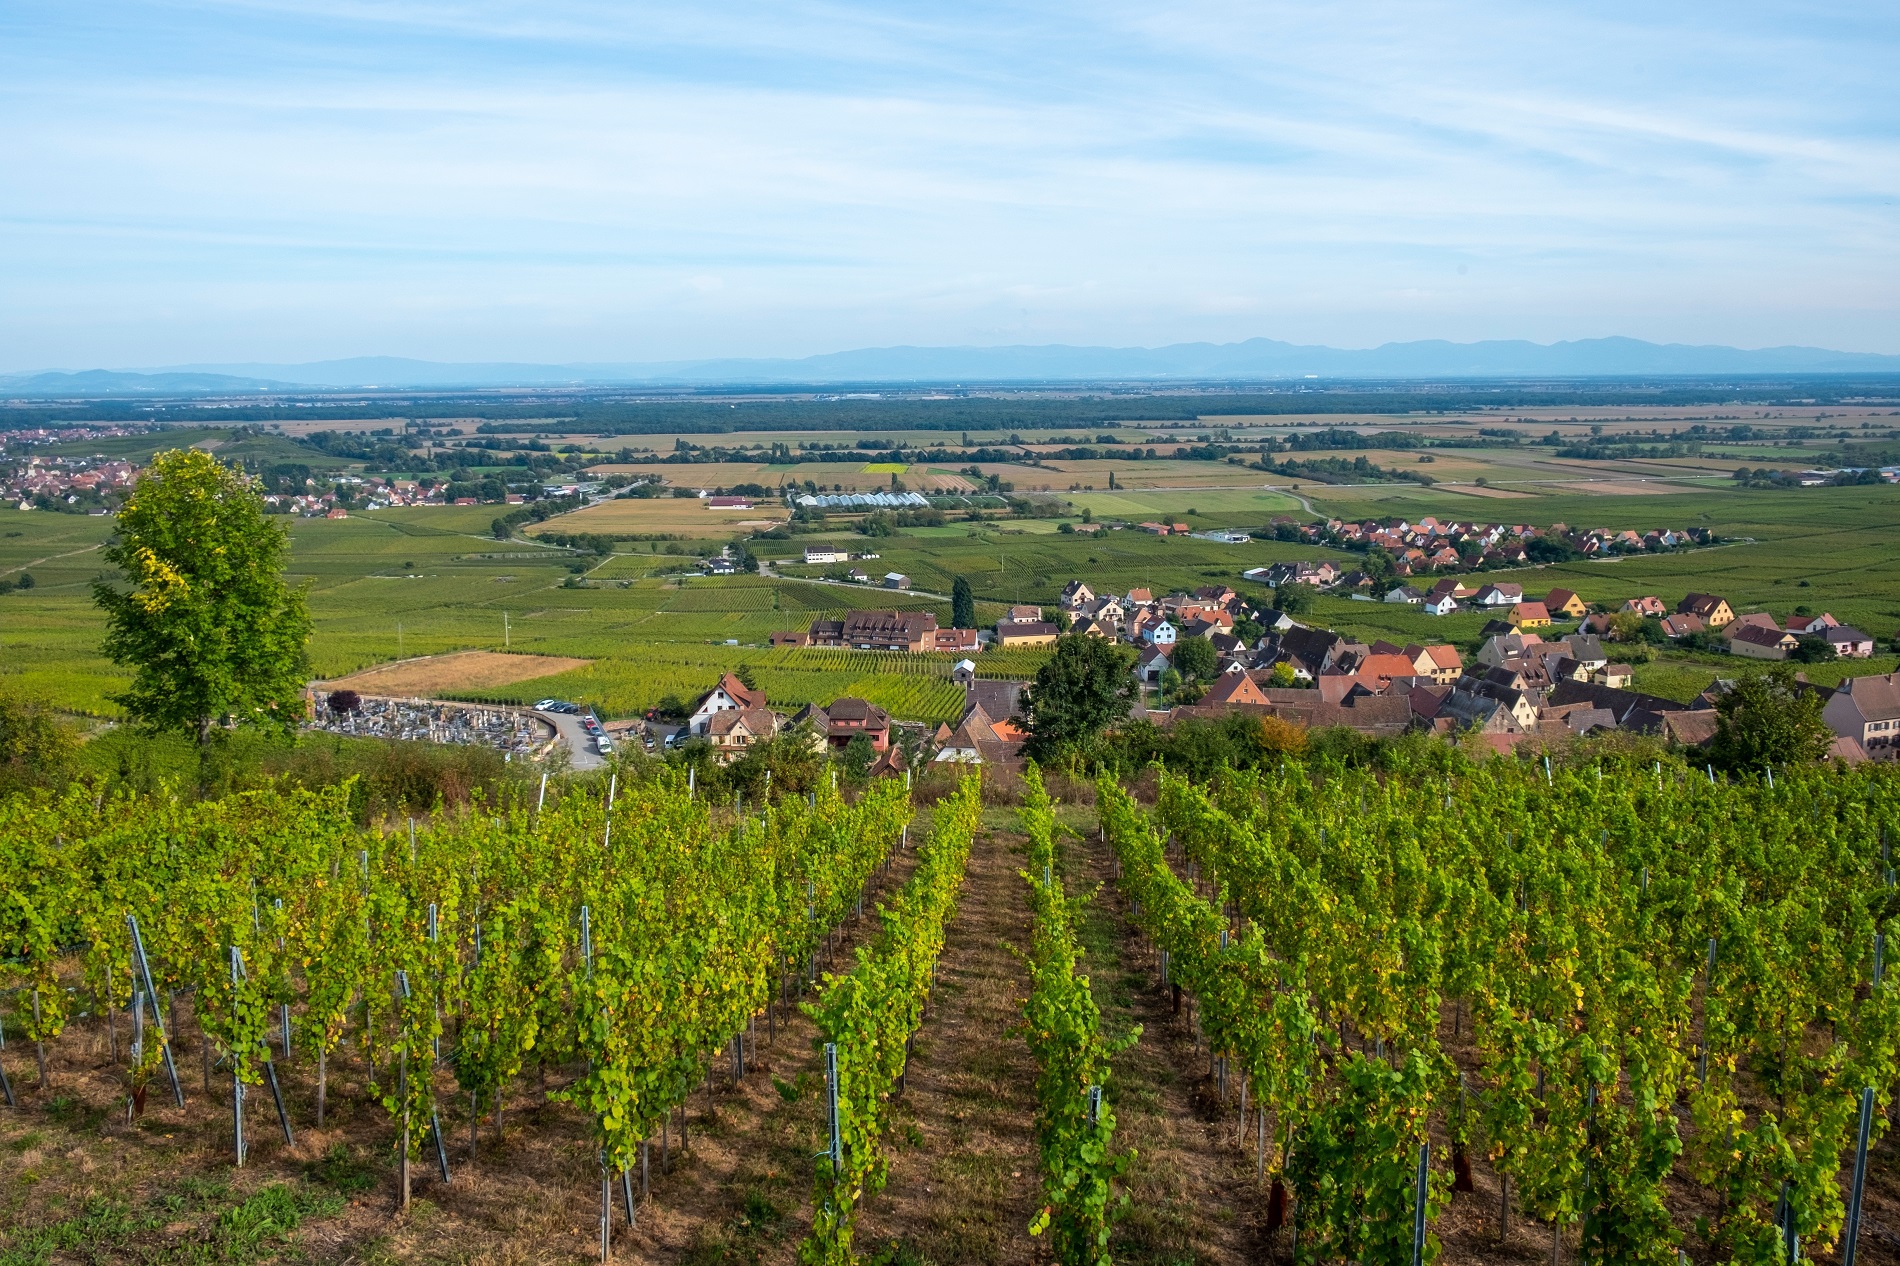 Dag 6 - Wandelvakantie door de heuvels en wijngaarden van de Elzas en Vogezen